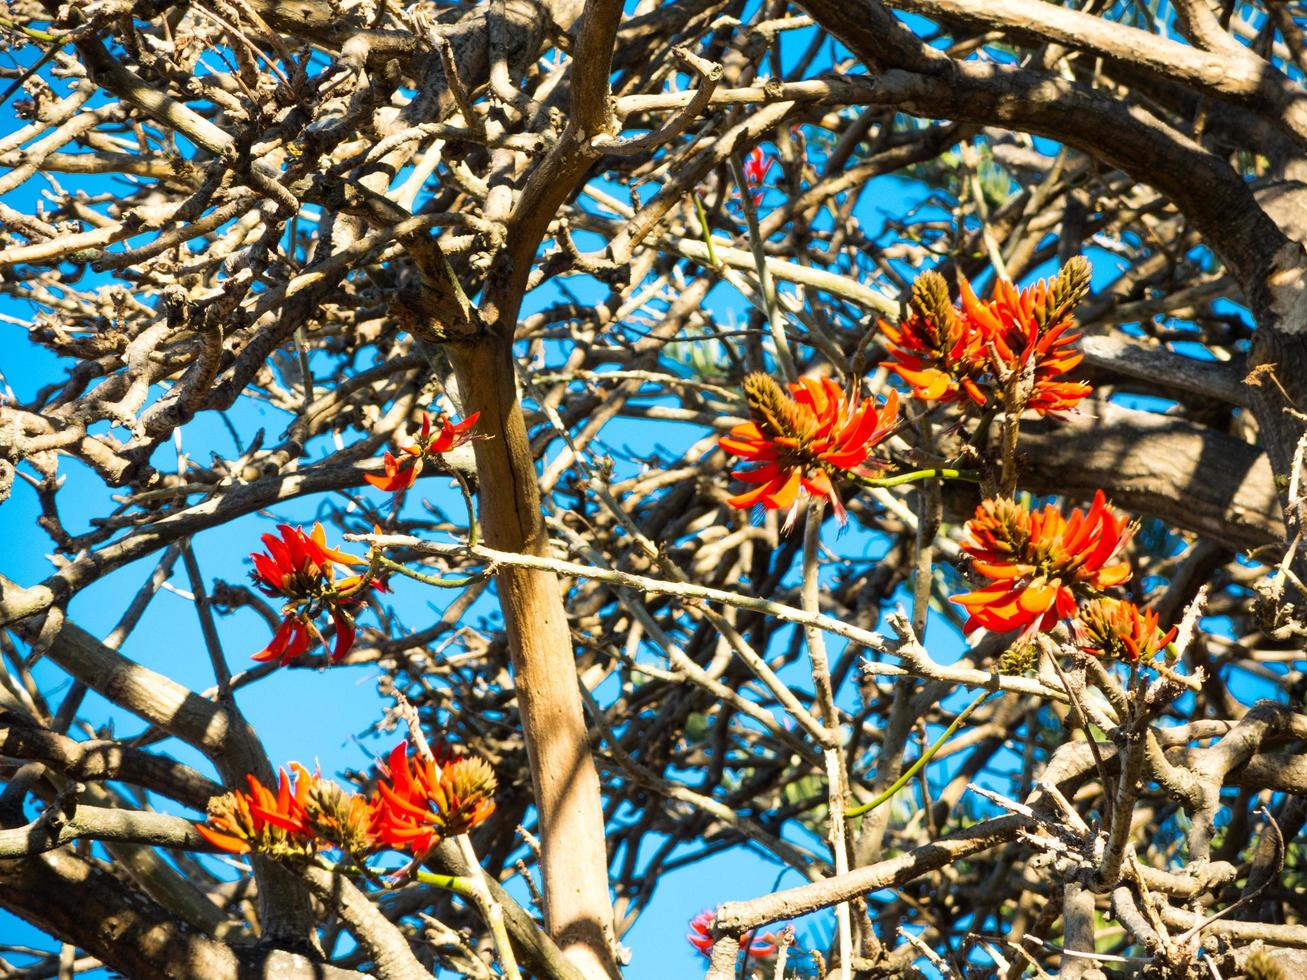 laranja vermelho lindo erythrina flores na árvore, é um gênero de plantas com flores na família das ervilhas, fabaceae. foto